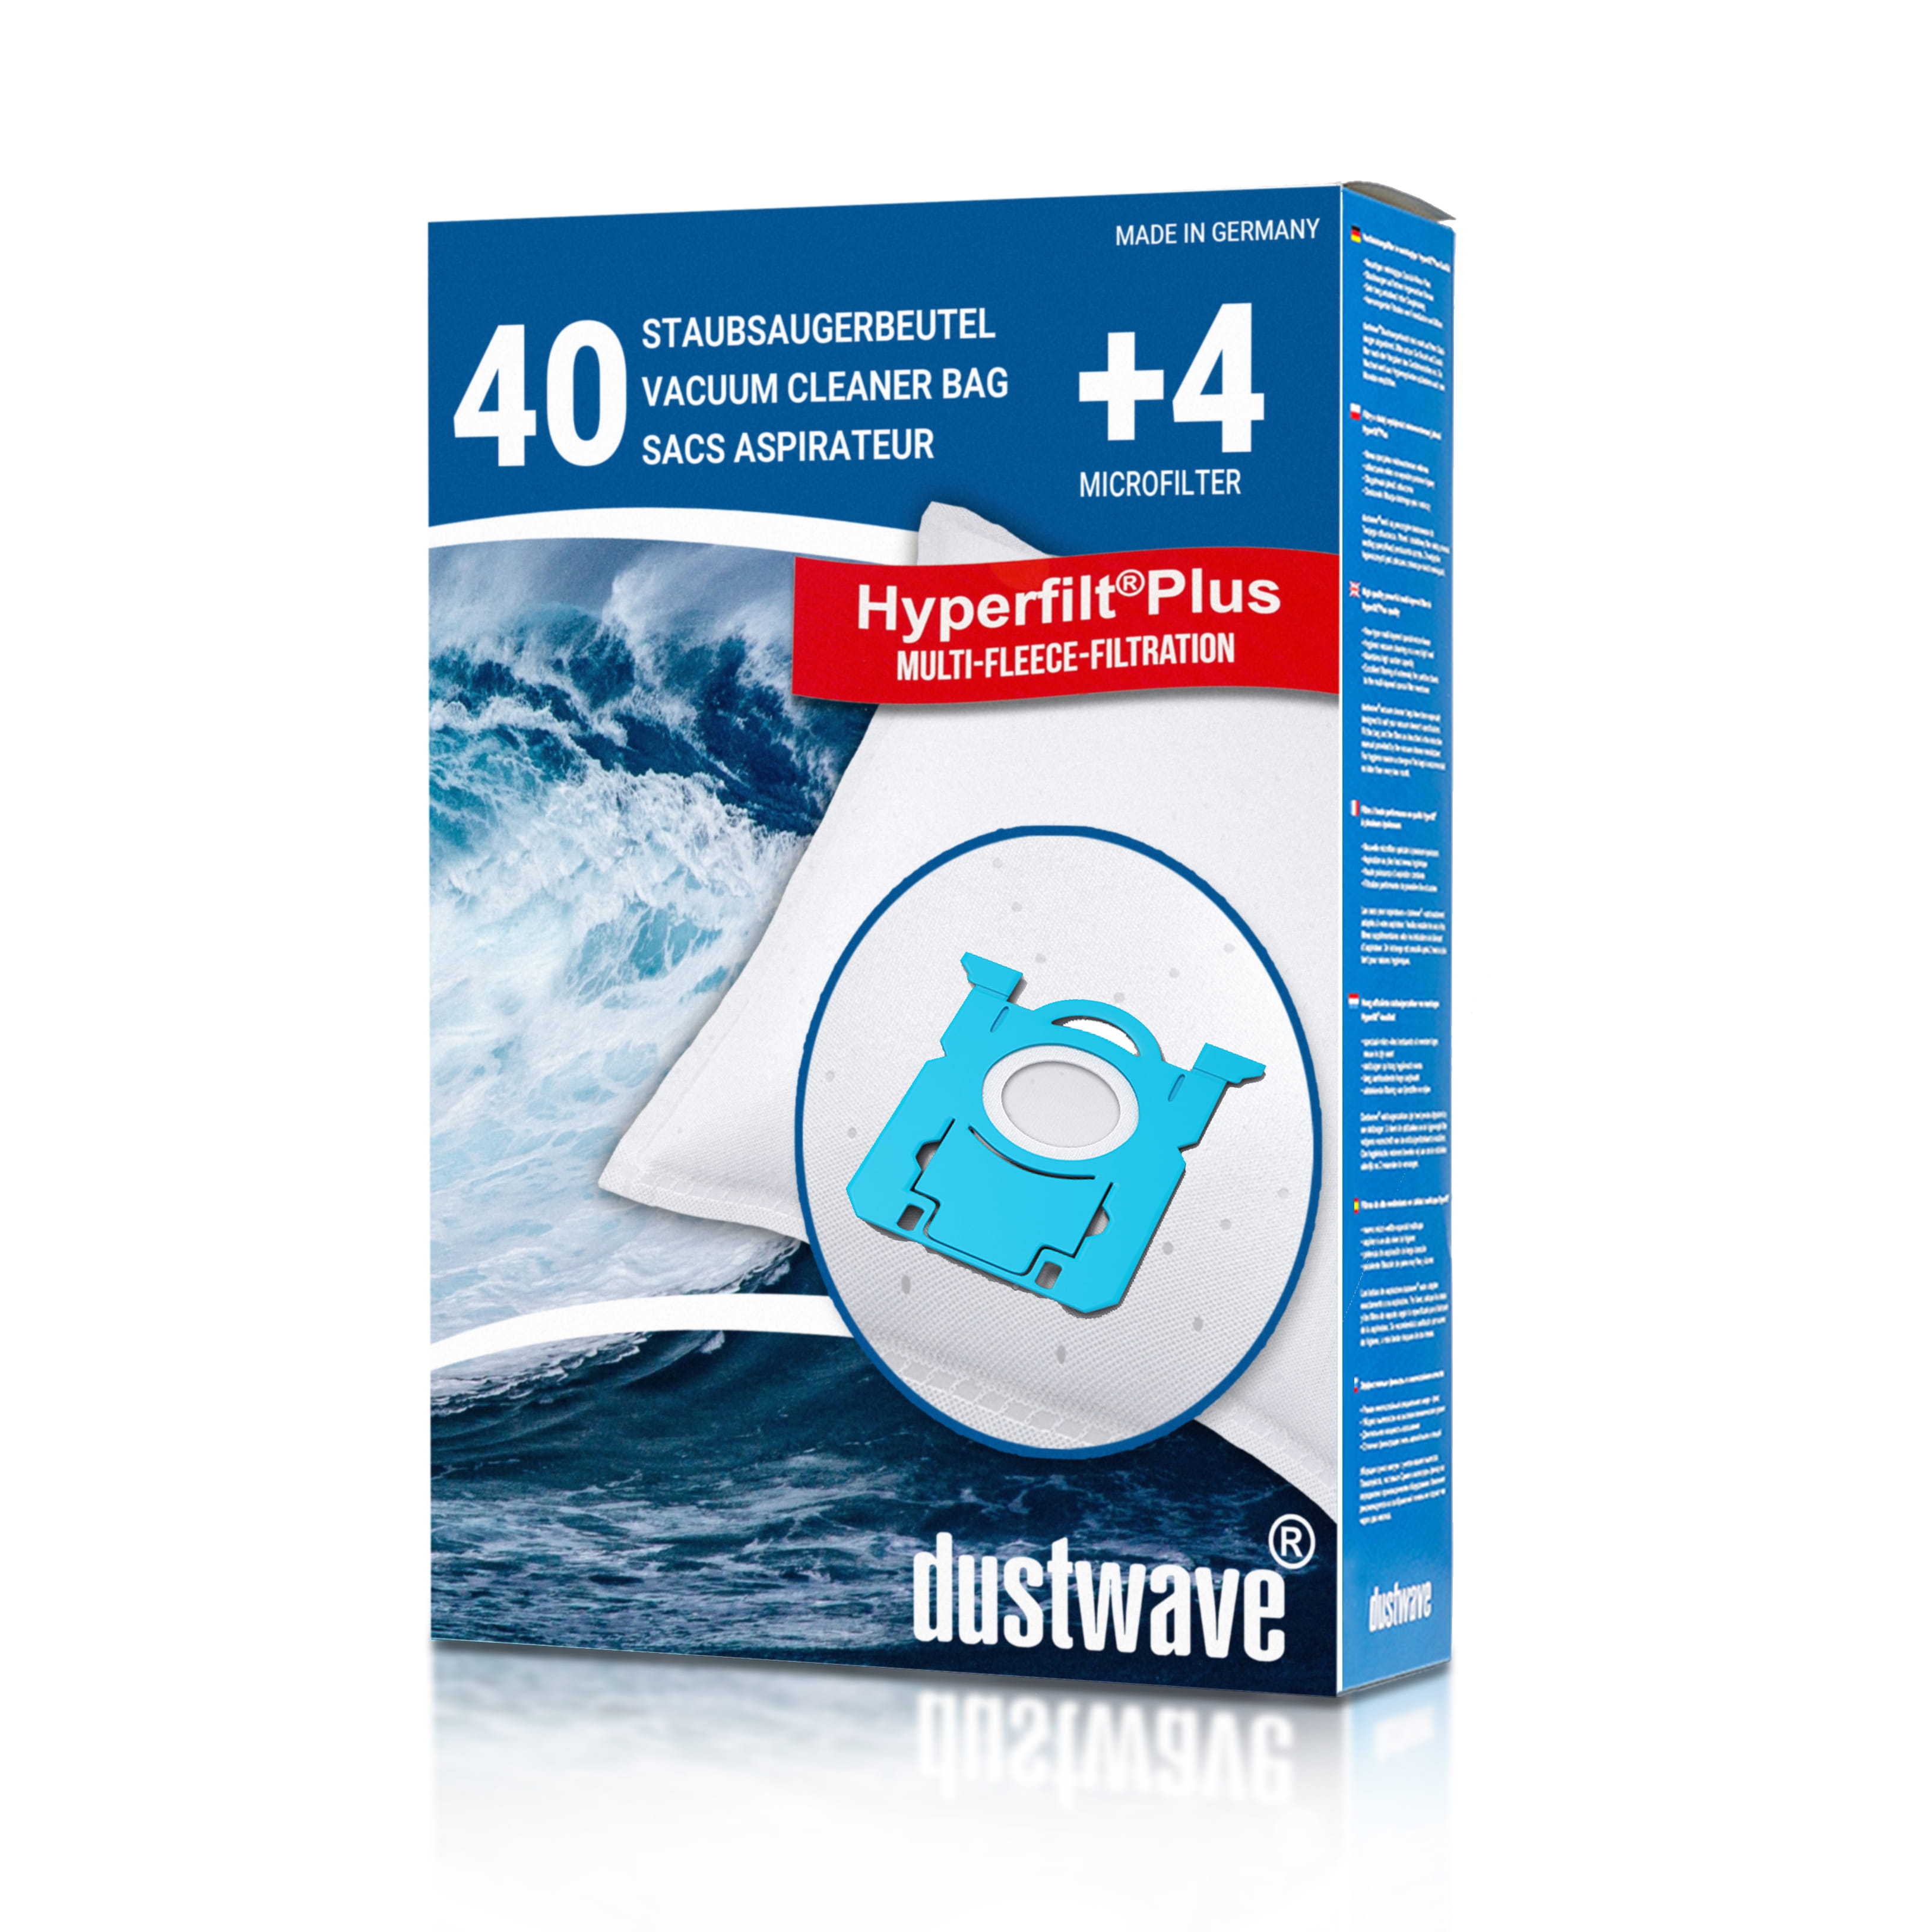 Dustwave® 40 Staubsaugerbeutel für AEG ACS ENERGY Classic Silence - hocheffizient mit Hygieneverschluss - Made in Germany